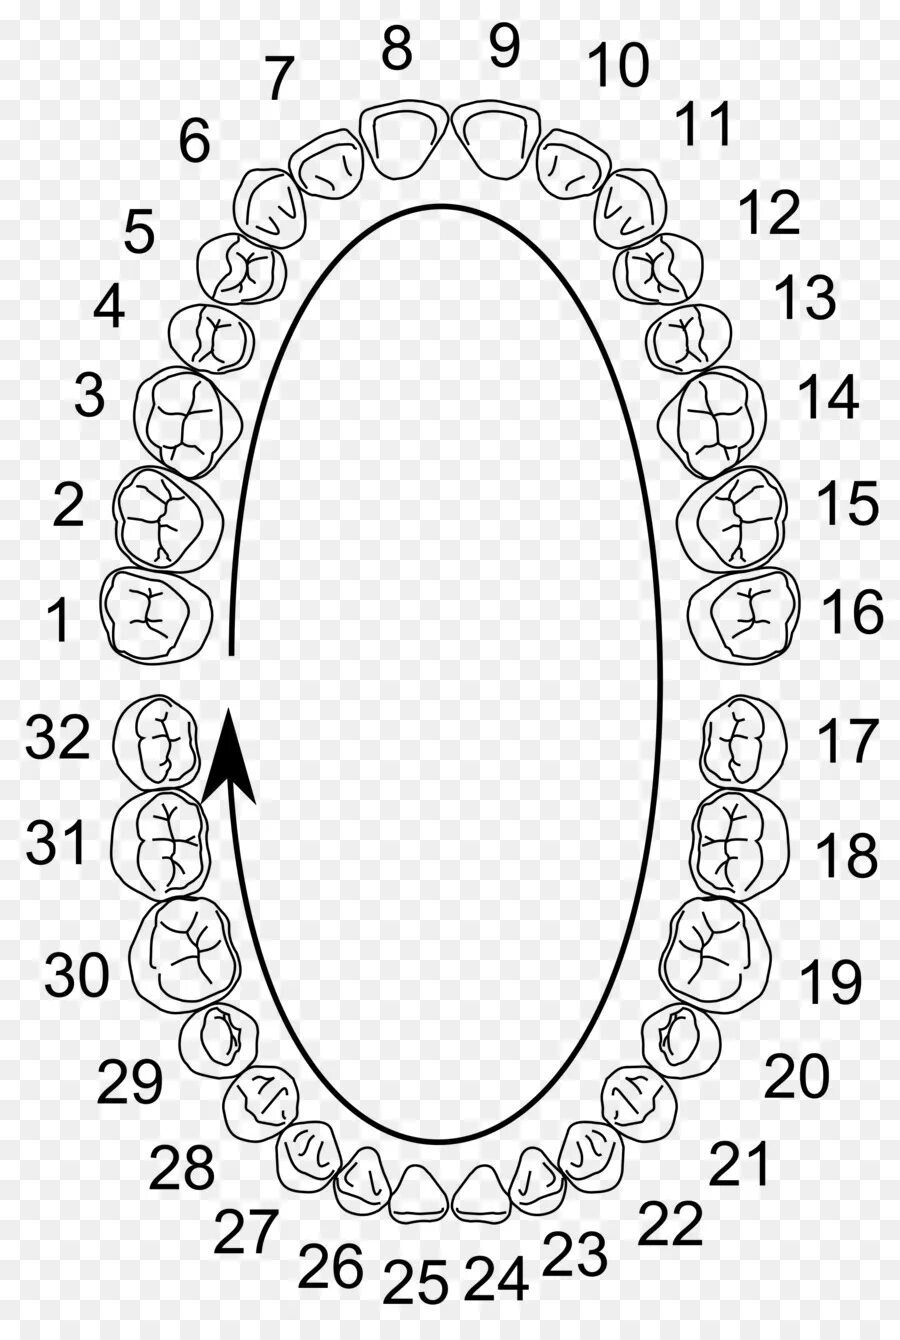 Нумерация зубов в стоматологии схема у взрослых. Схема нумерации зубов. Нумерация детских зубов в стоматологии схема. Универсальная система нумерации зубов. Схема зубов человека с нумерацией.